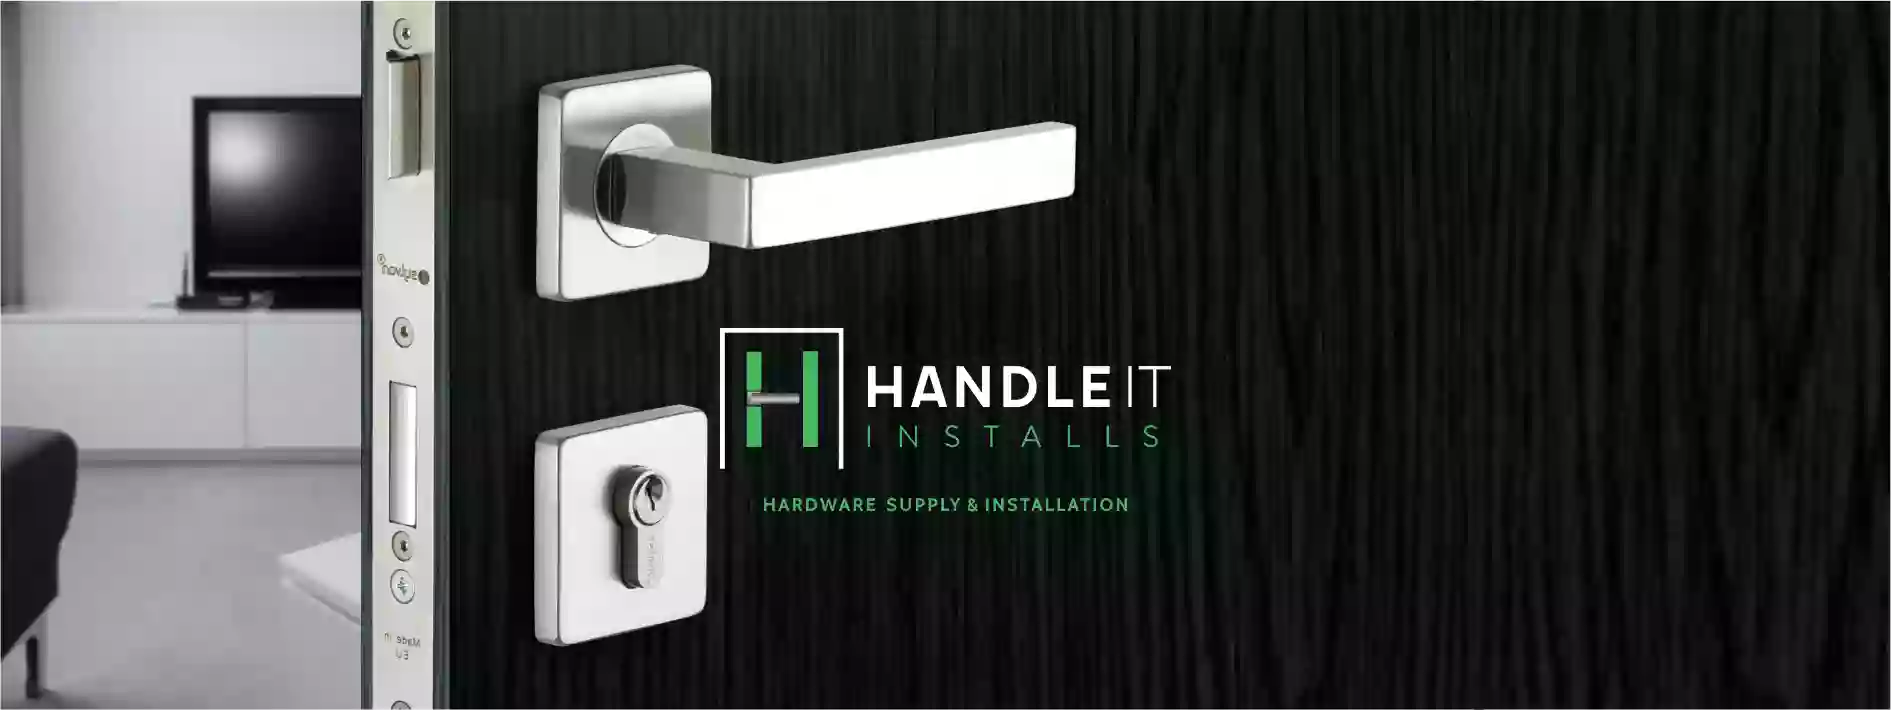 Handle It Installs Ltd